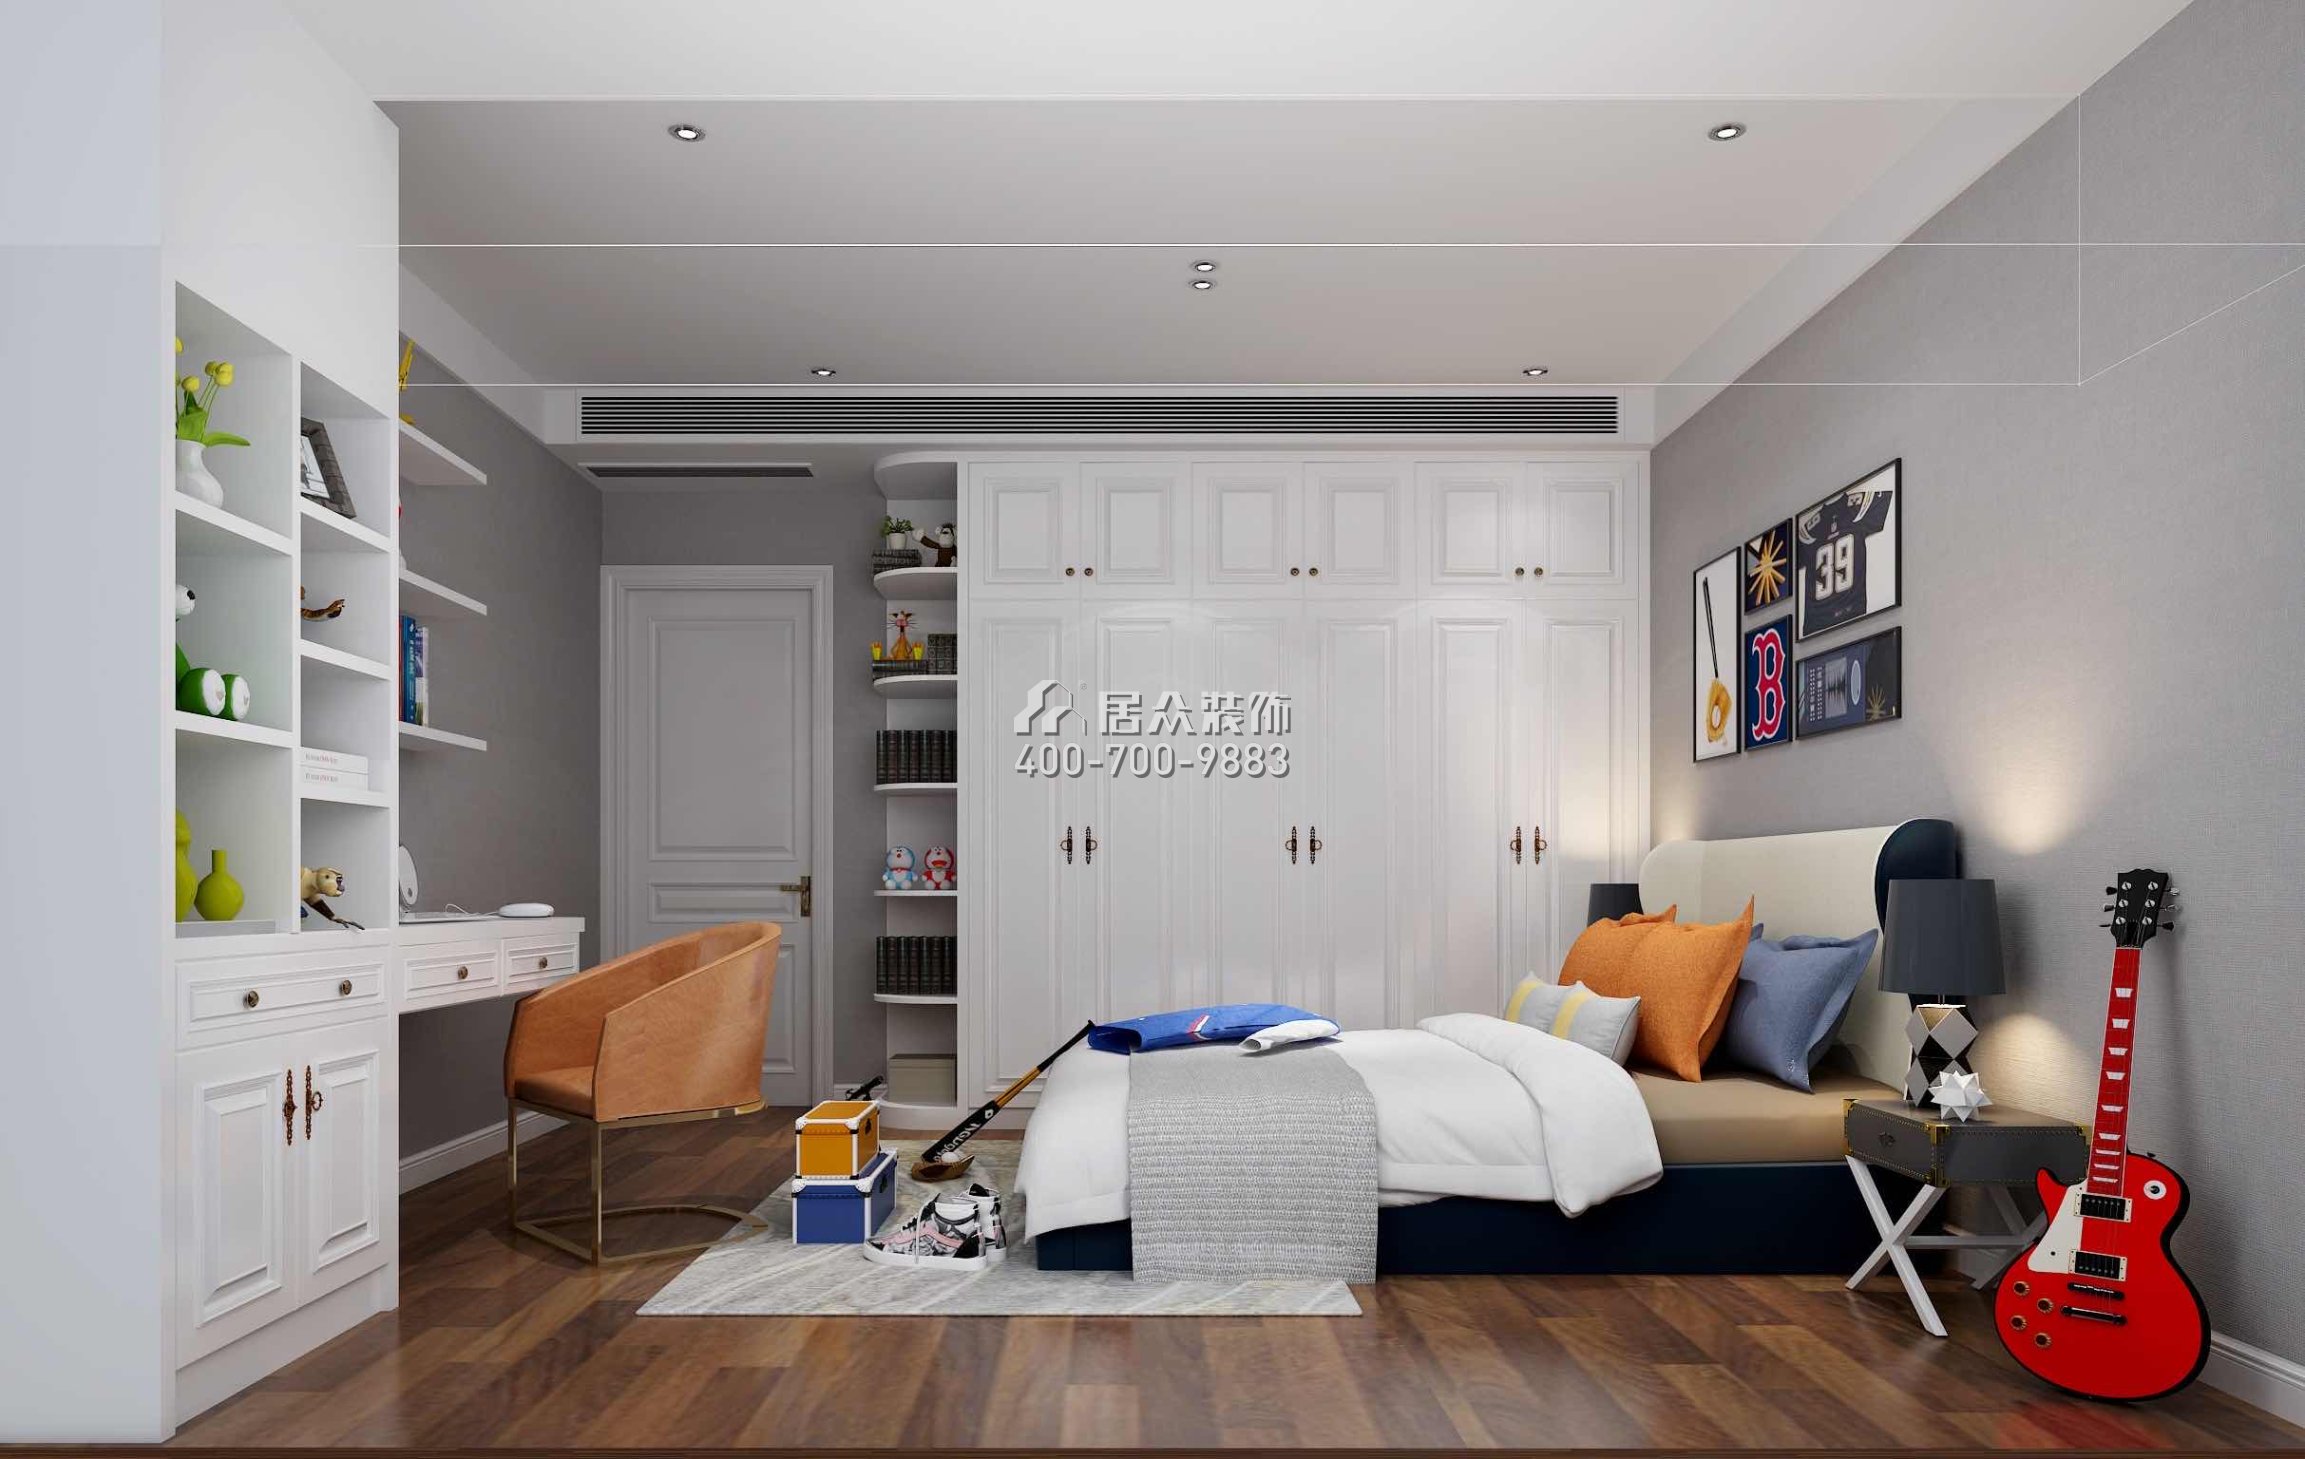 京基滨河时代145平方米欧式风格平层户型卧室装修效果图